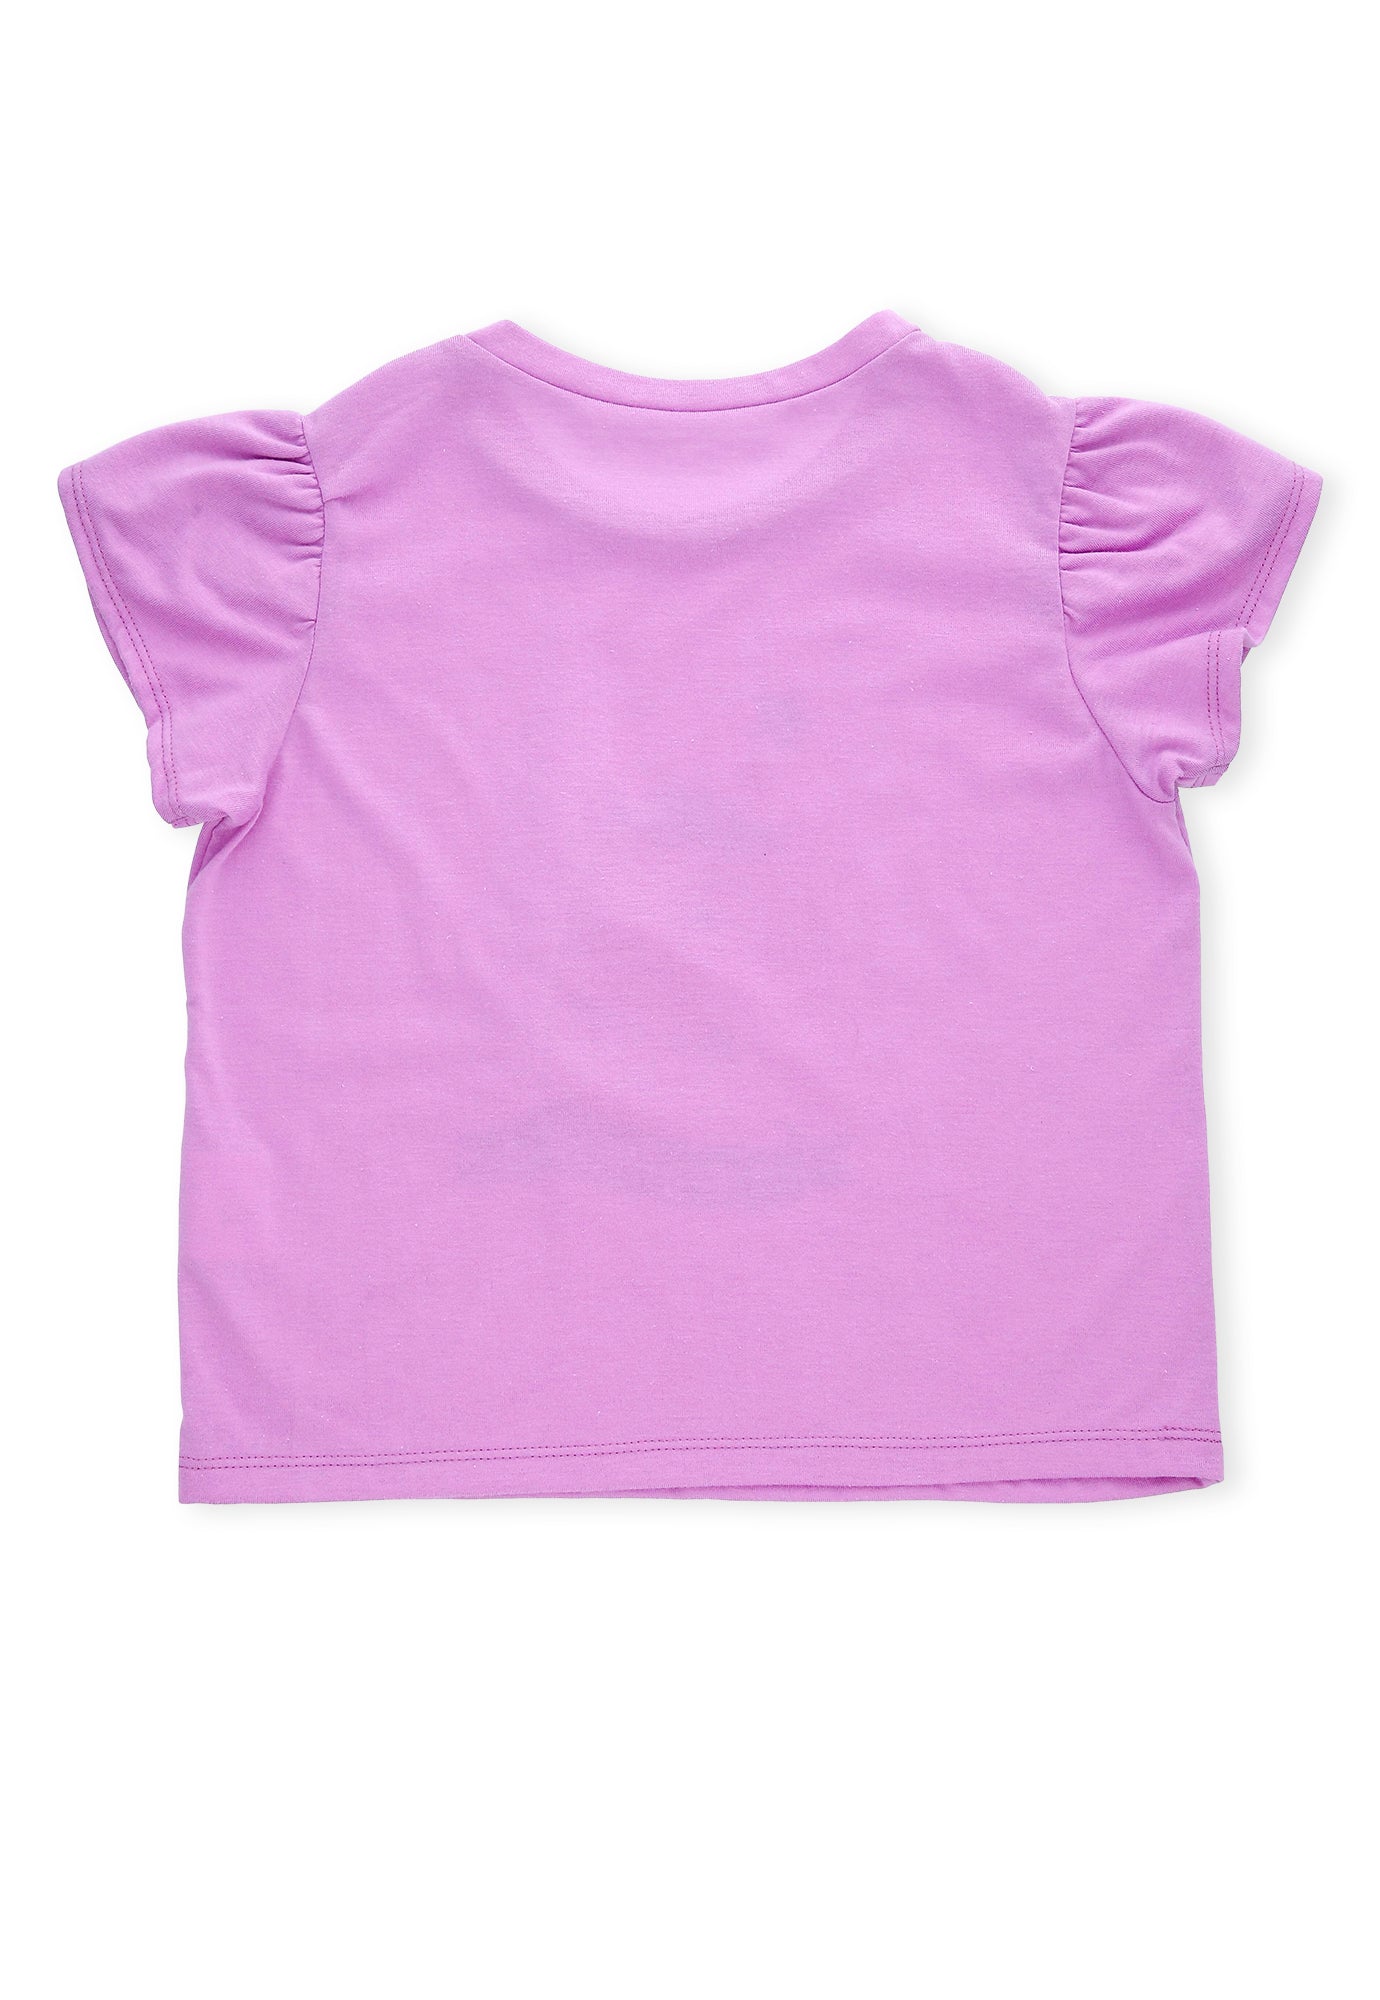 Camiseta lila lavanda con decoración en frente y manga corta cruzada para bebé niña